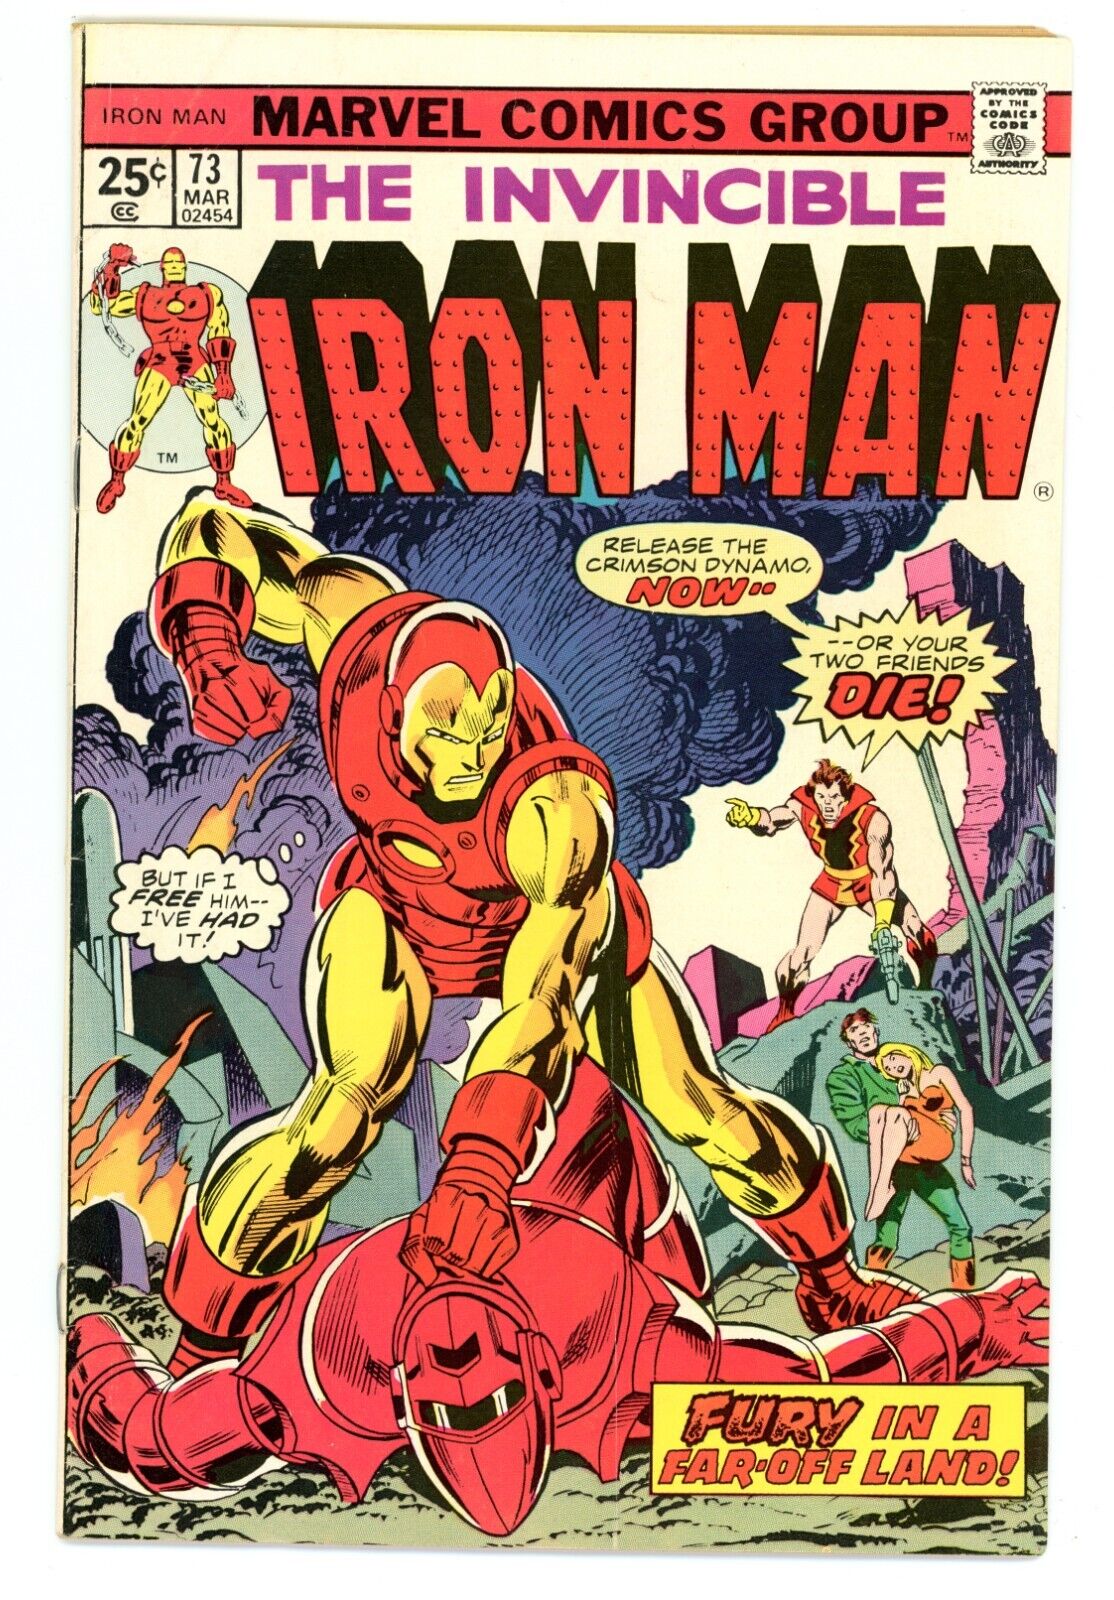 Invincible Iron Man #73  1974 VF+ Marvel Comics